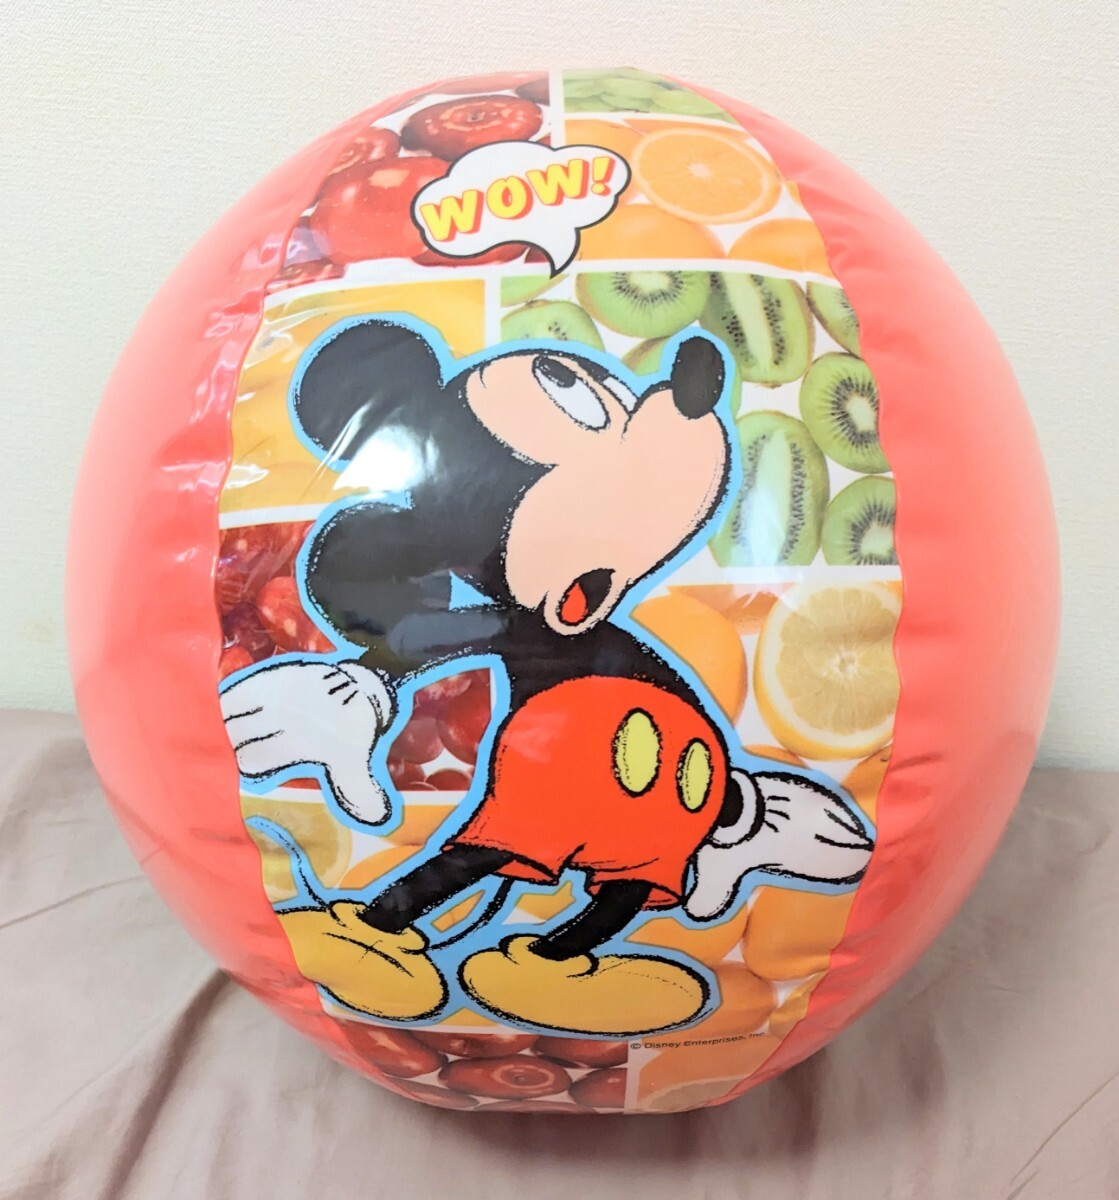 ミッキーマウス ビーチボール 55cm ディズニー 空ビ 空気ビニール風船 Inflatable Mickey Mouse Plute Disney Beach Ball Pool Toy_画像1